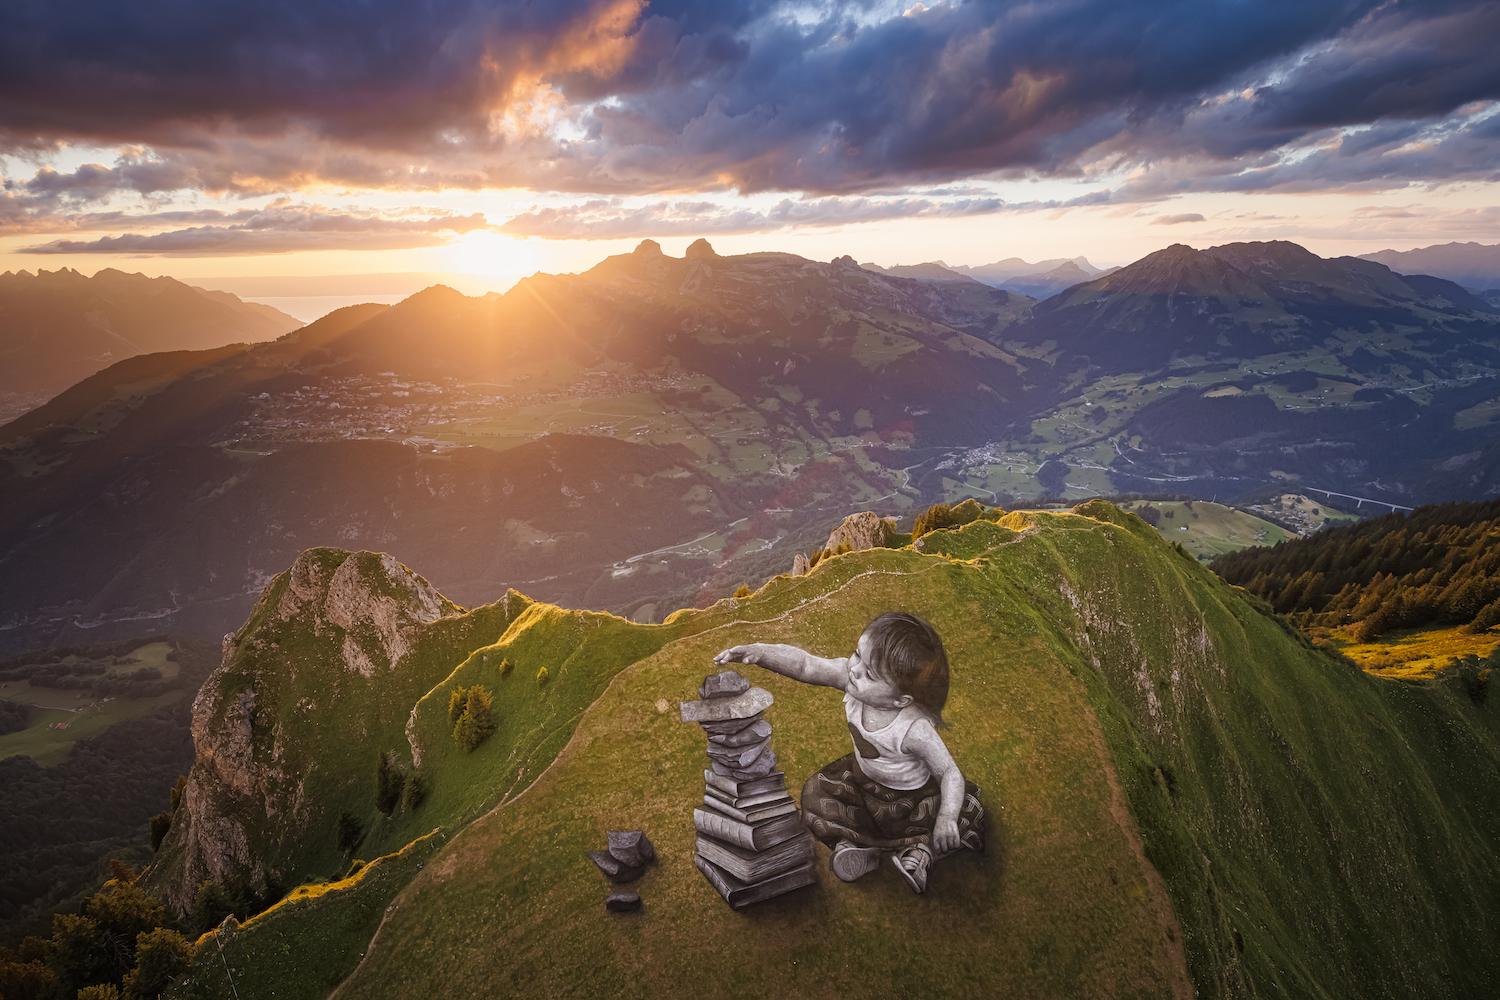 Dieses Kunstwerk ist nur von oben richtig zu betrachten - und verschwindet von selbst: Das 2500 Quadratmeter großes, biologisch abbaubares Landart-Gemälde «Vers l'equilibre»des französisch-schweizerischen Künstlers&nbsp;Saype&nbsp;ist in der Nähe des Gipfels des Grand Chamossaire oberhalb des Alpenortes Villars-sur-Ollon in der Schweiz zu sehen. Es zeigt ein riesiges Mädchen, das Bücher und Steine stapelt. Das Fresko mit dem Titel «Vers l'equilibre» (Auf dem Weg zum Gleichgewicht) erstreckt sich über eine F